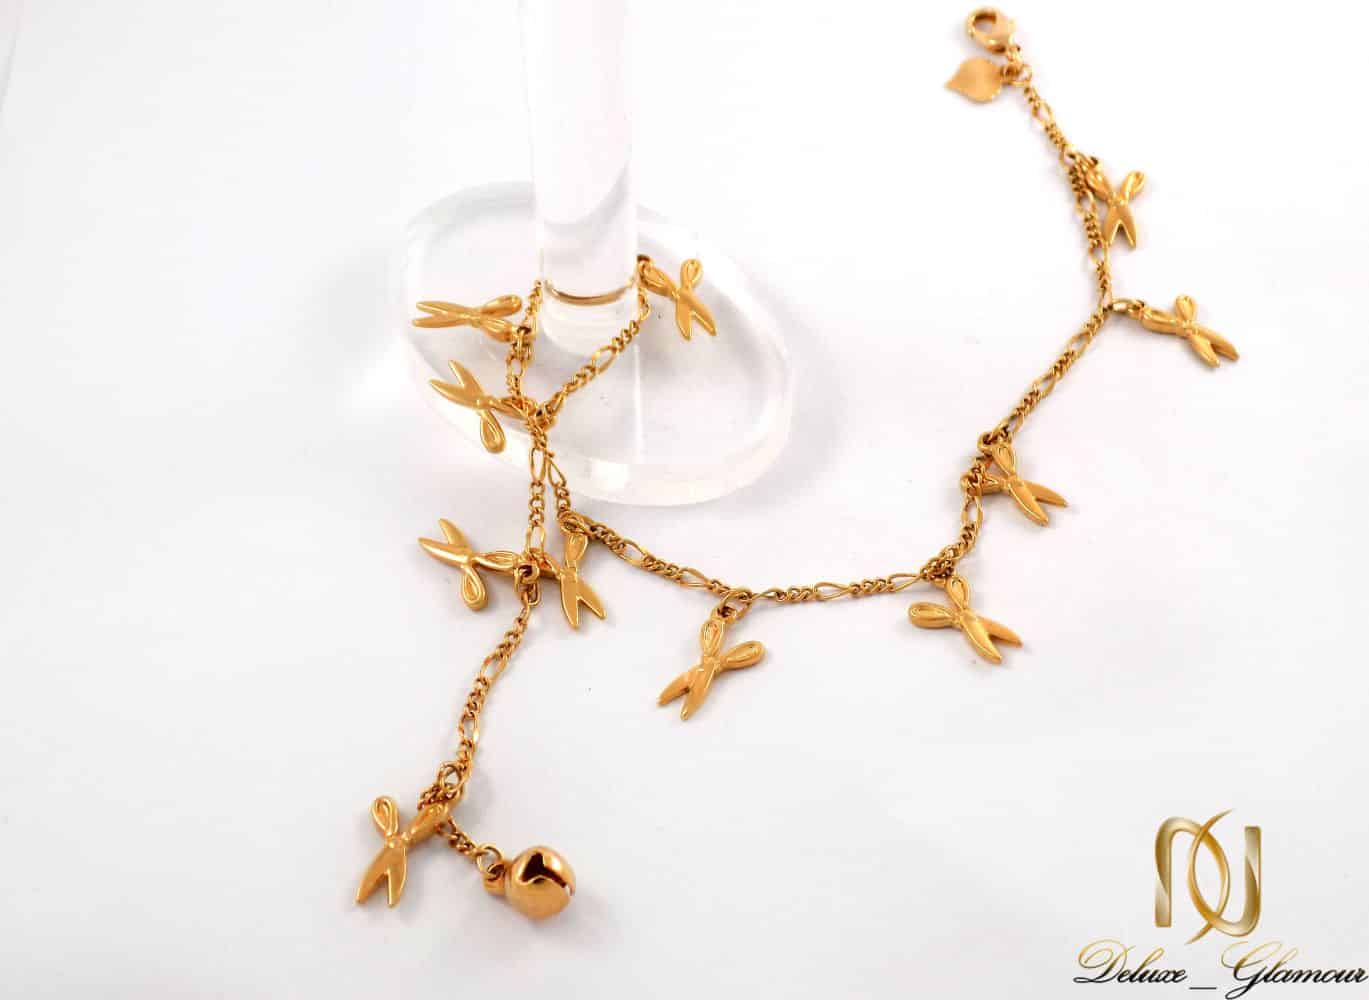 پابند زنانه ژوپینگ با طرح قیچی و روکش آب طلای 18 عیار se-n112 از نمای بالا